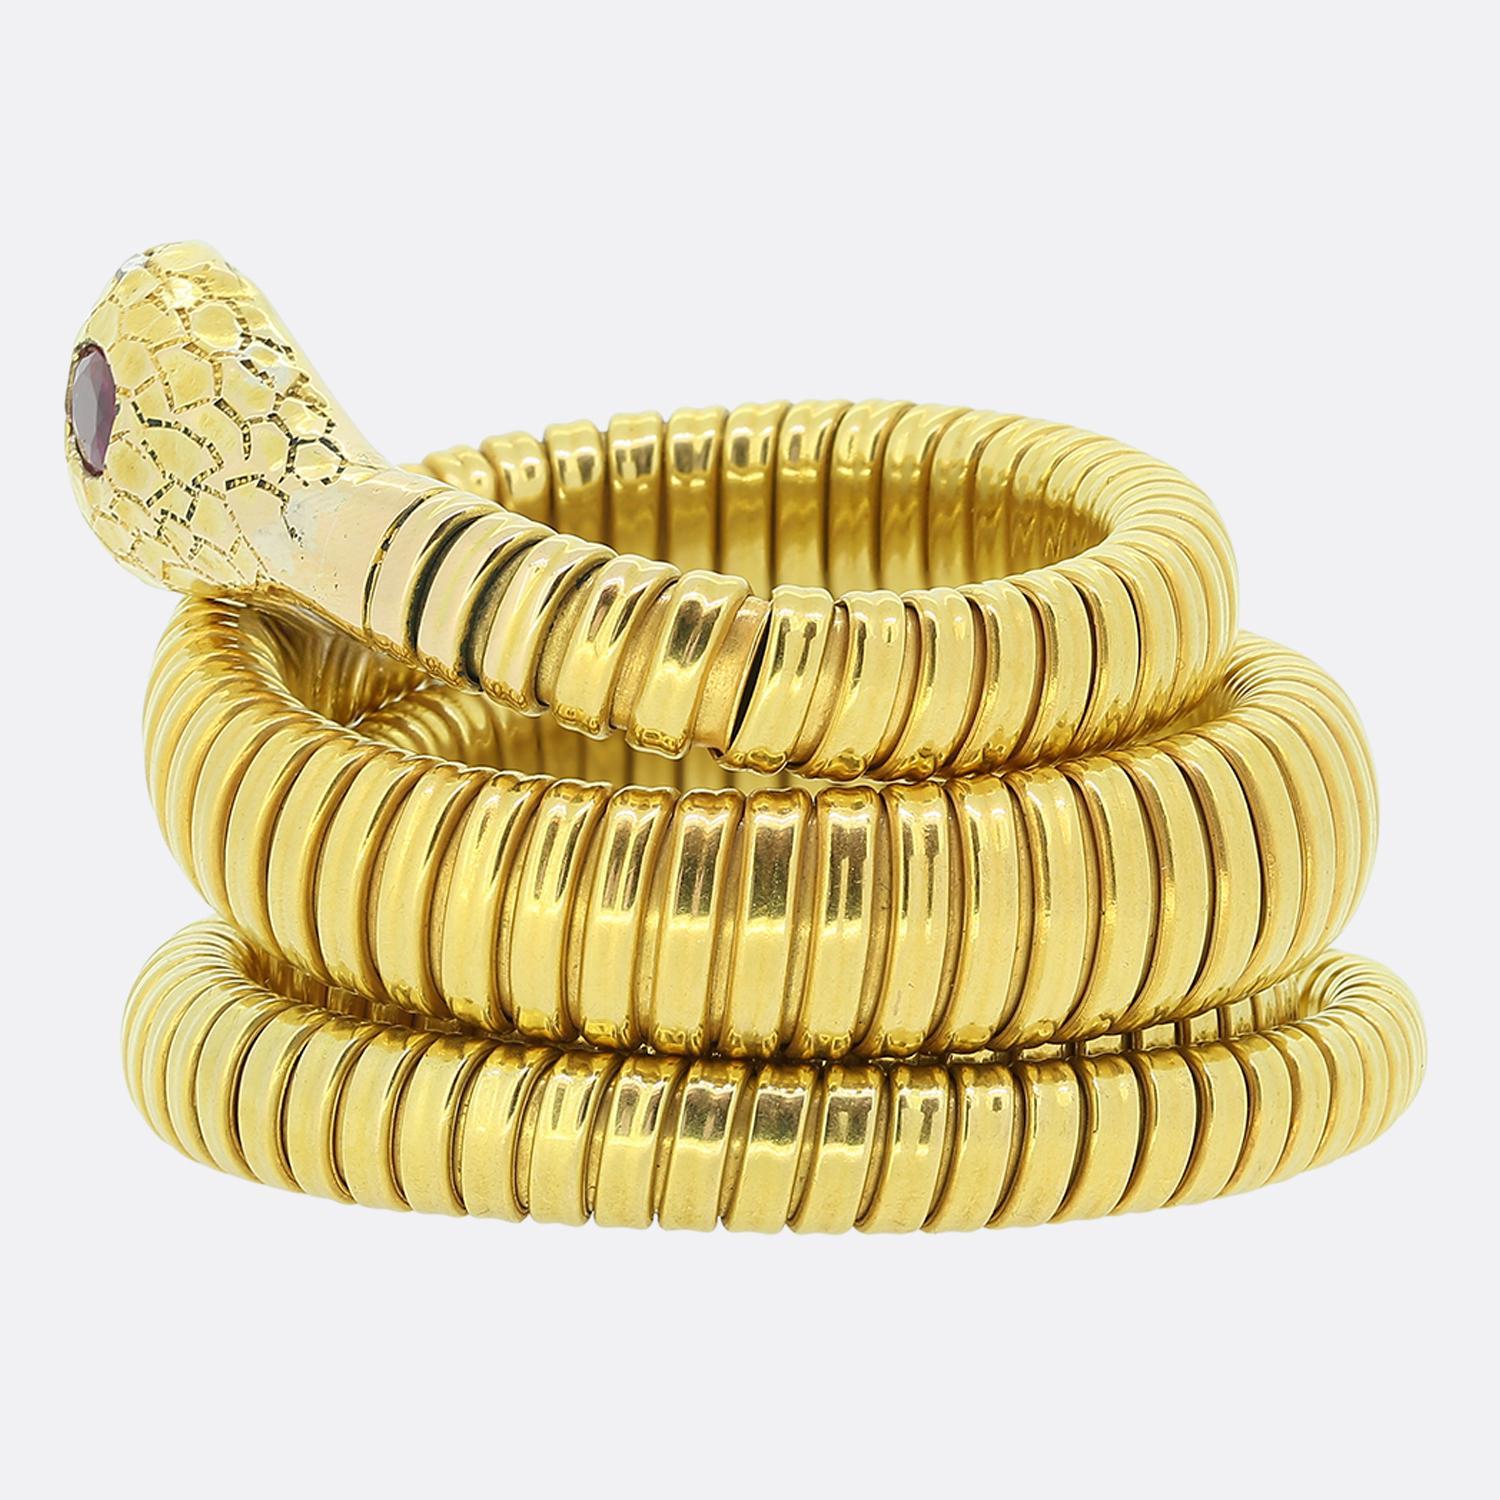 Nous avons ici un remarquable bracelet en serpent enroulé. Cette pièce ancienne a été fabriquée en or jaune 18 carats et témoigne d'une attention exceptionnelle aux détails. Plus particulièrement, la finition en couches de la peau du corps,